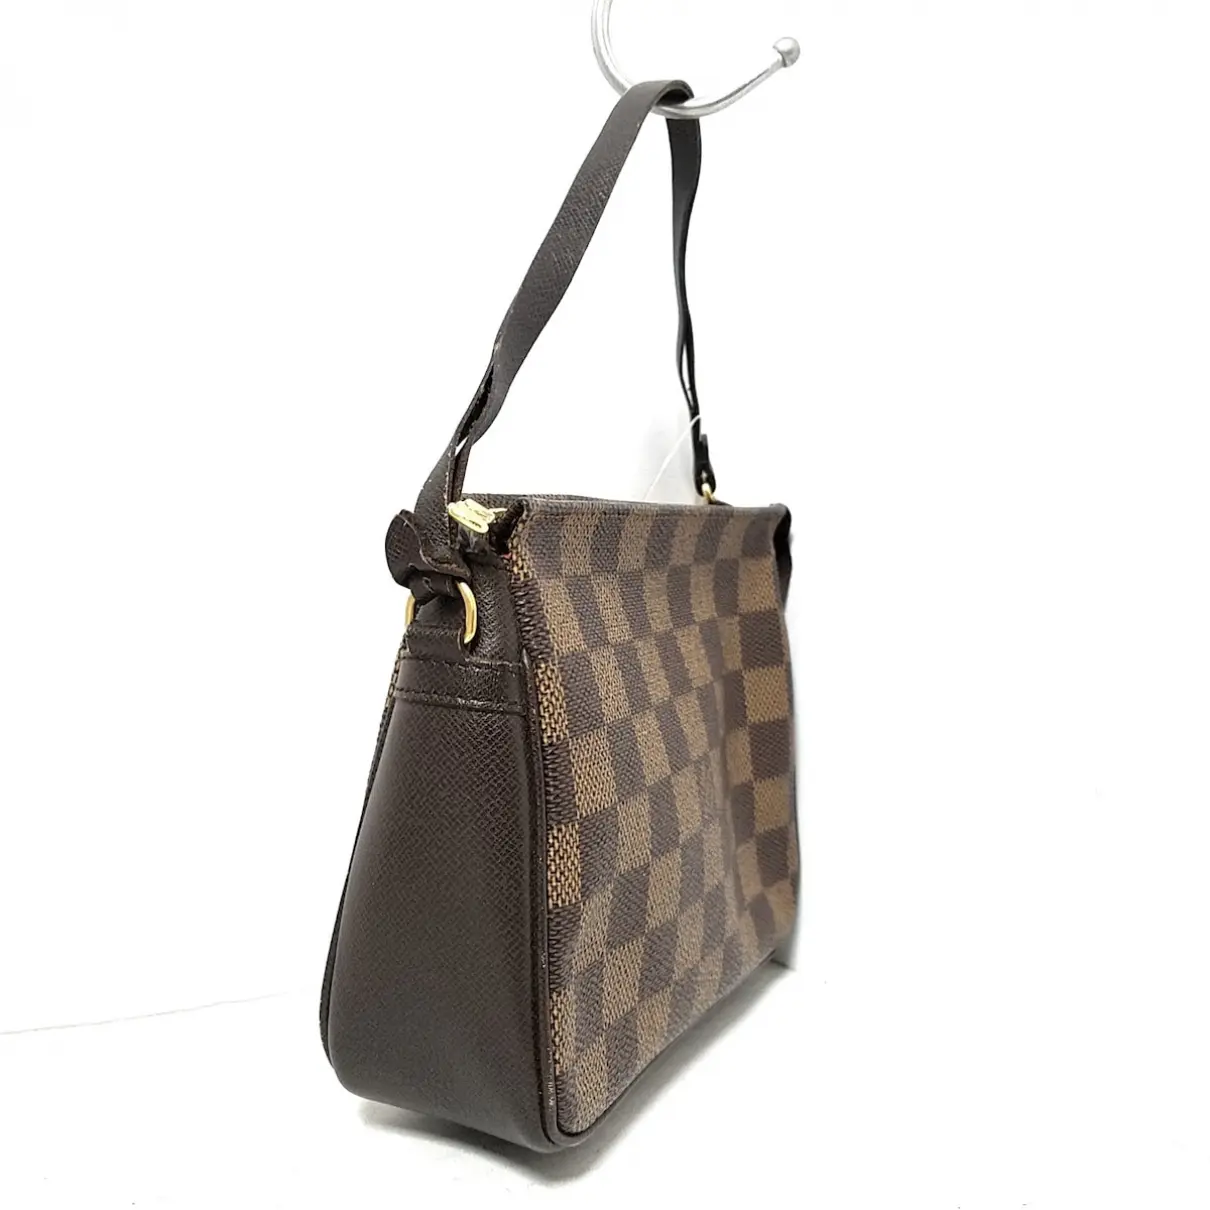 Buy Louis Vuitton Trouville cloth handbag online